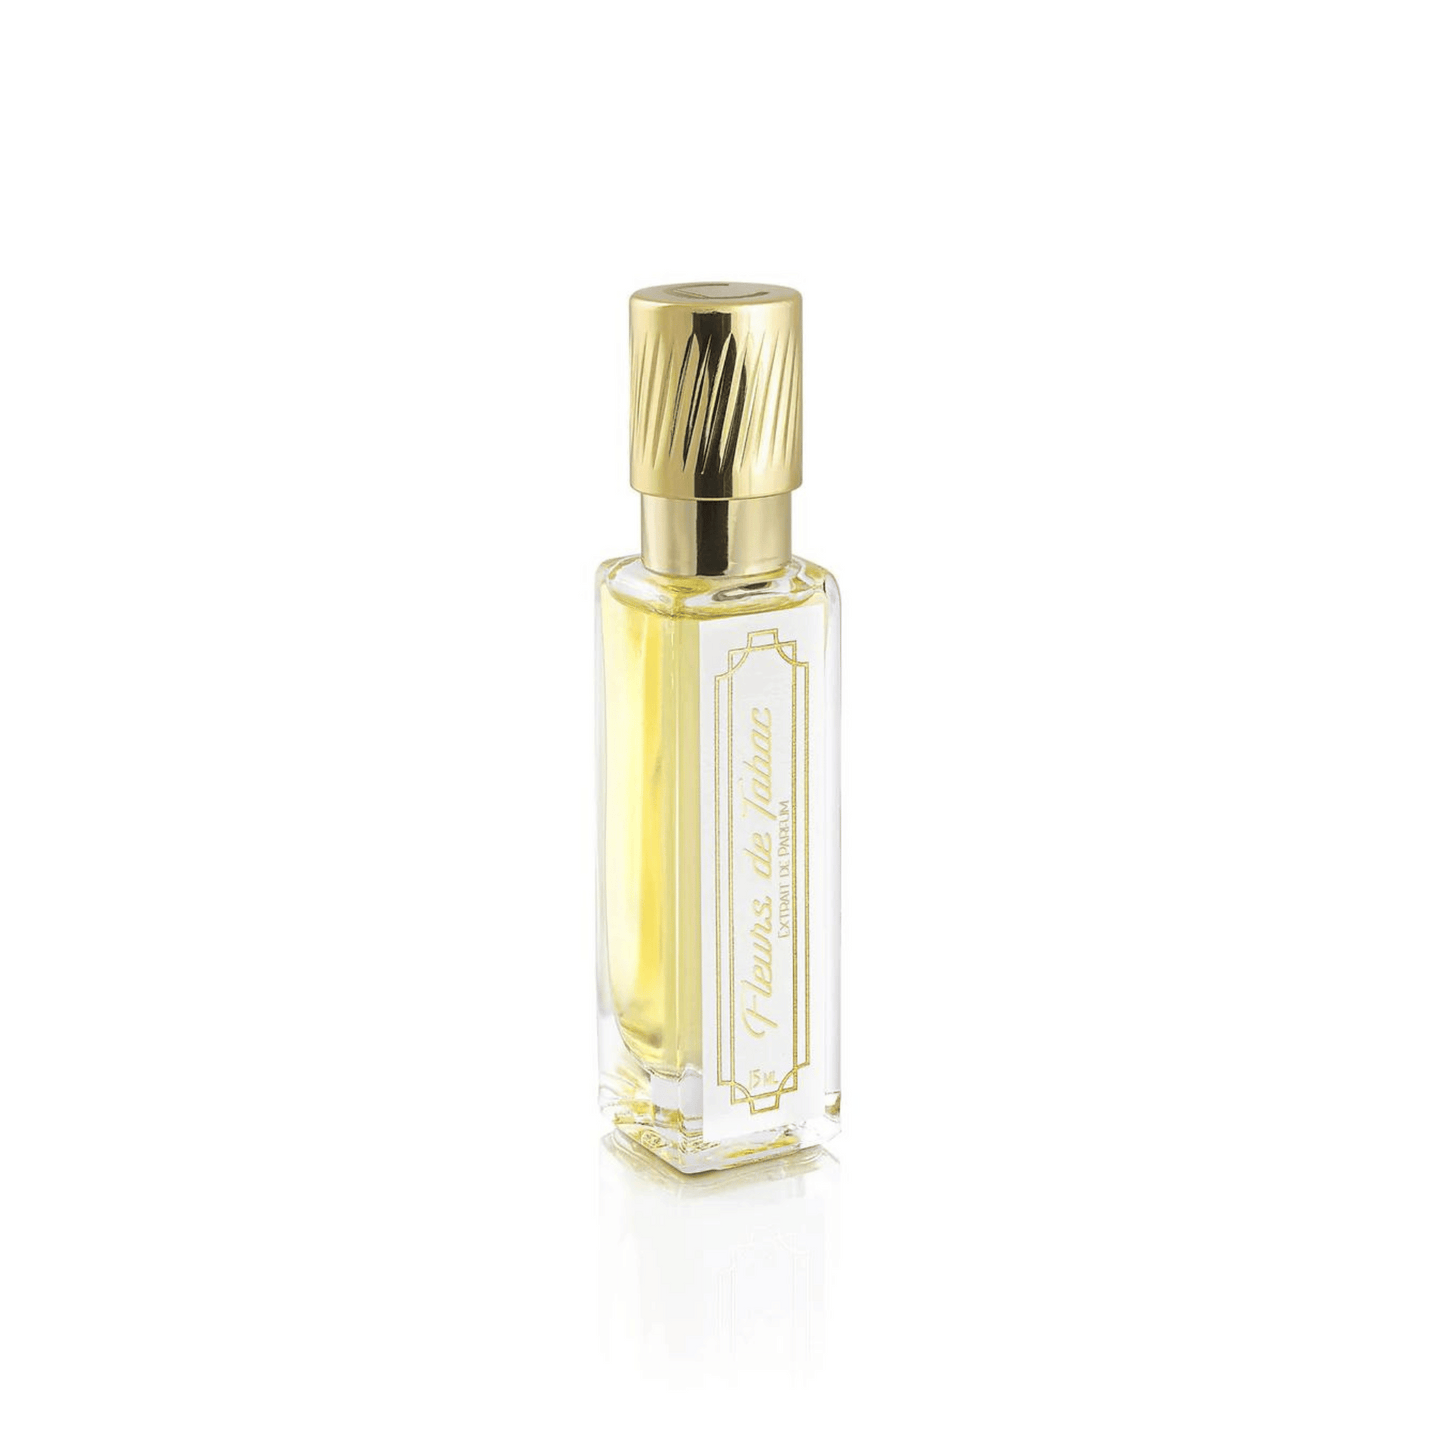 Primary Image of Fleurs de Tabac Extrait de Parfum